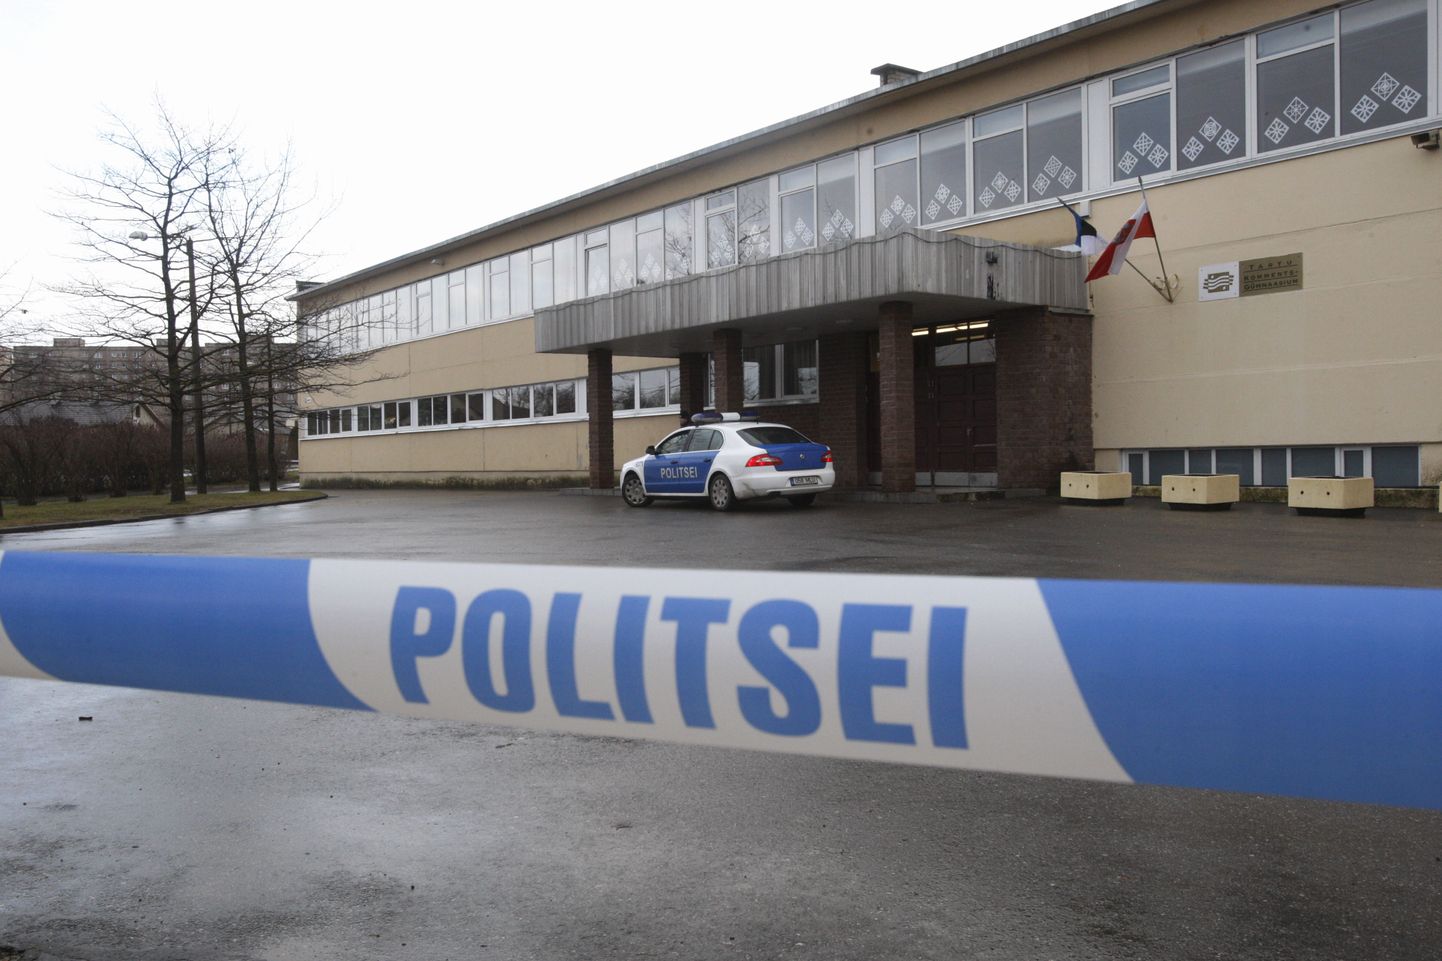 Pildistatud 25. novembril 2009.
Politseilintidega piiratud koolitulistamise ähvarduse saanud Tartu Kommertsgümnaasium.